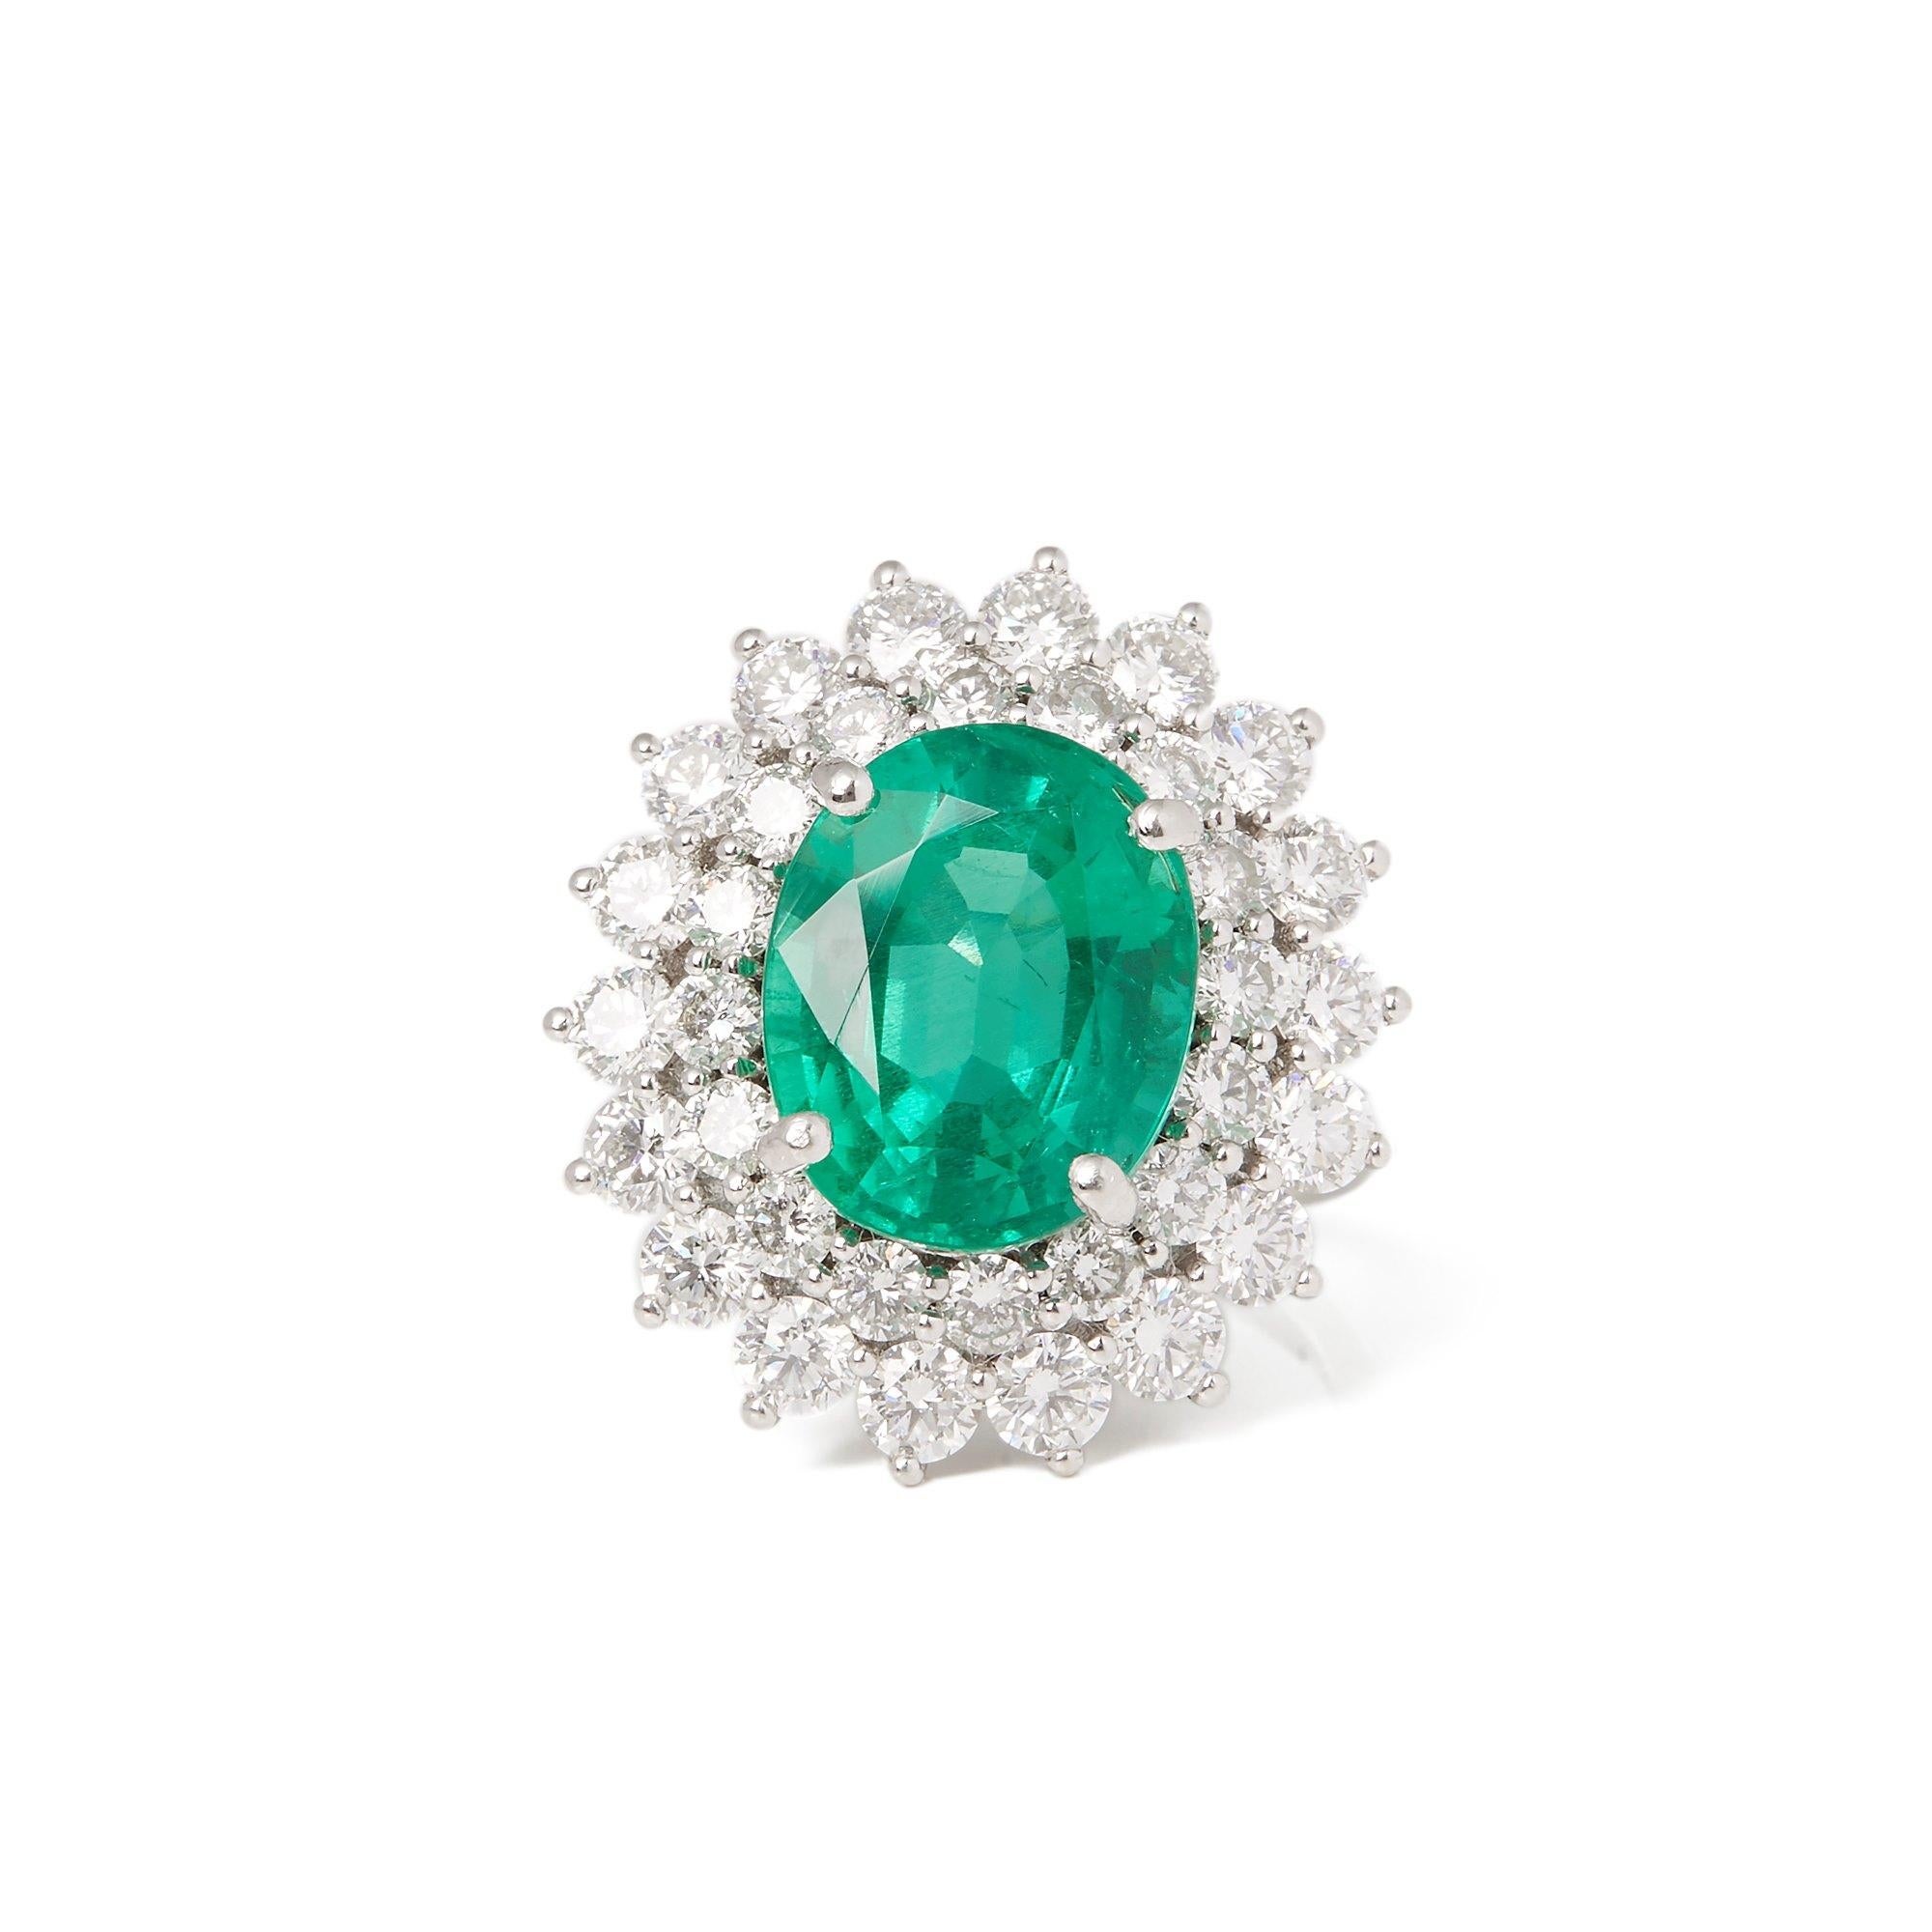 Dieser von David Jerome entworfene Ring stammt aus seiner Privatsammlung und enthält einen oval geschliffenen Smaragd von insgesamt 6,42 Karat, der in Kolumbien gewonnen wurde. Mit runden Diamanten im Brillantschliff von insgesamt 3,04 Karat in